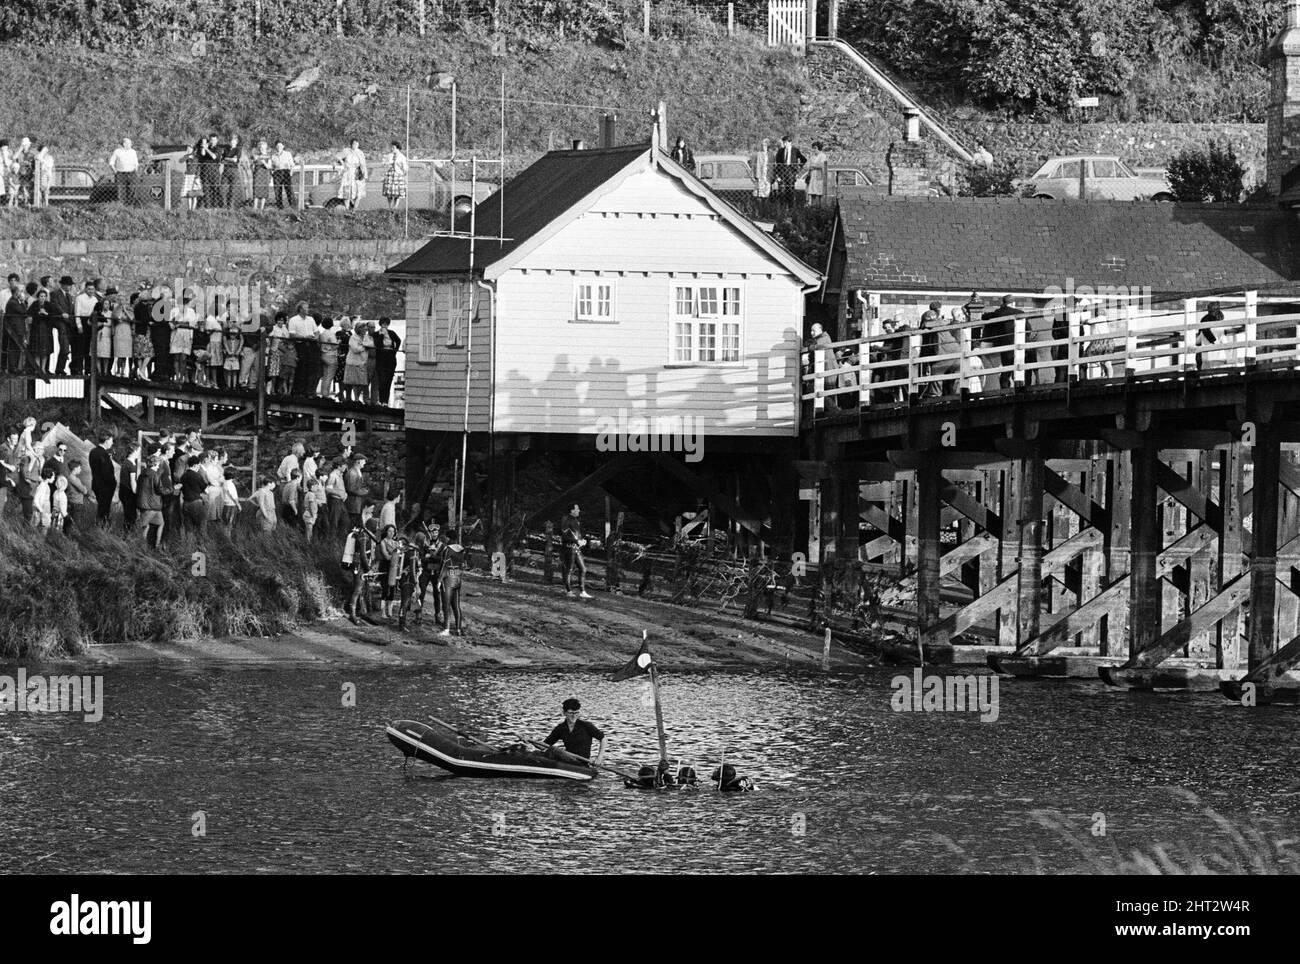 Das Ausflugsboot Prince of Wales kenterte und kippte seine 39 Passagiere am 22.. Juli 1966 in die Mawddach-Mündung in Penmaenpool, Merioneth, Nordwales. Der Ausflug am Sommernachmittag wurde zu einem plötzlichen Überlebenskampf, als das Boot eine U-Drehung in Richtung eines Landungssteg machte. Der Prinz von Wales wurde gegen eine Mautbrücke gefegt. Ein Loch wurde im Boot gerissen und es sank in drei Minuten. Das führte zu 15 Todesfällen, darunter 4 Kinder. Im Bild, Anglermänner am Ort des Sinkens, in der Nähe des Mastes. 23.. Juli 1966. Stockfoto